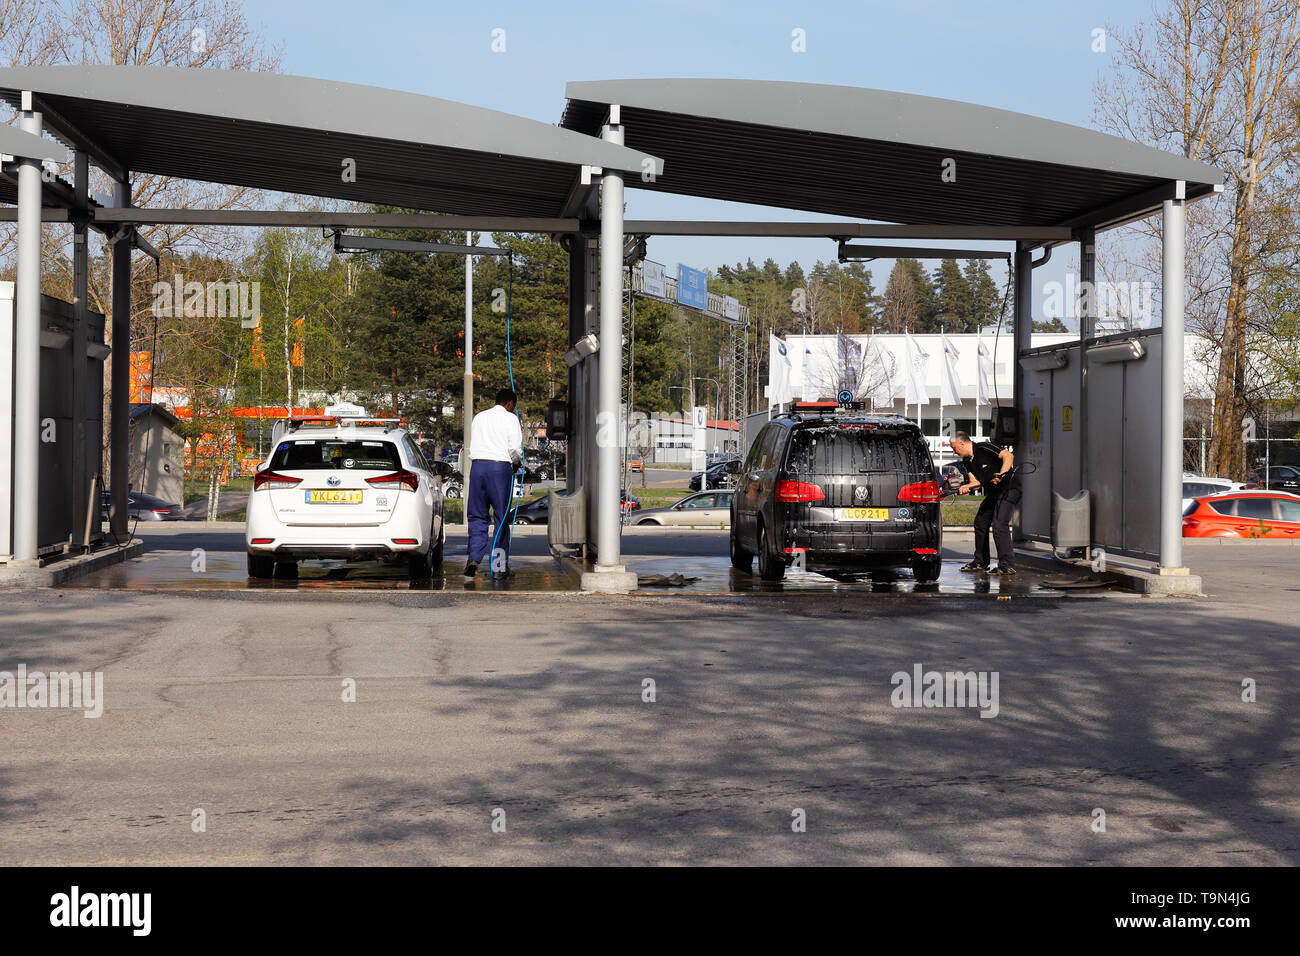 Orebro, Schweden - 26 April 2019: Zwei Taxis und zwei Personen Waschmaschine Umgebung freundlich an der Self Service Auto waschen. Stockfoto